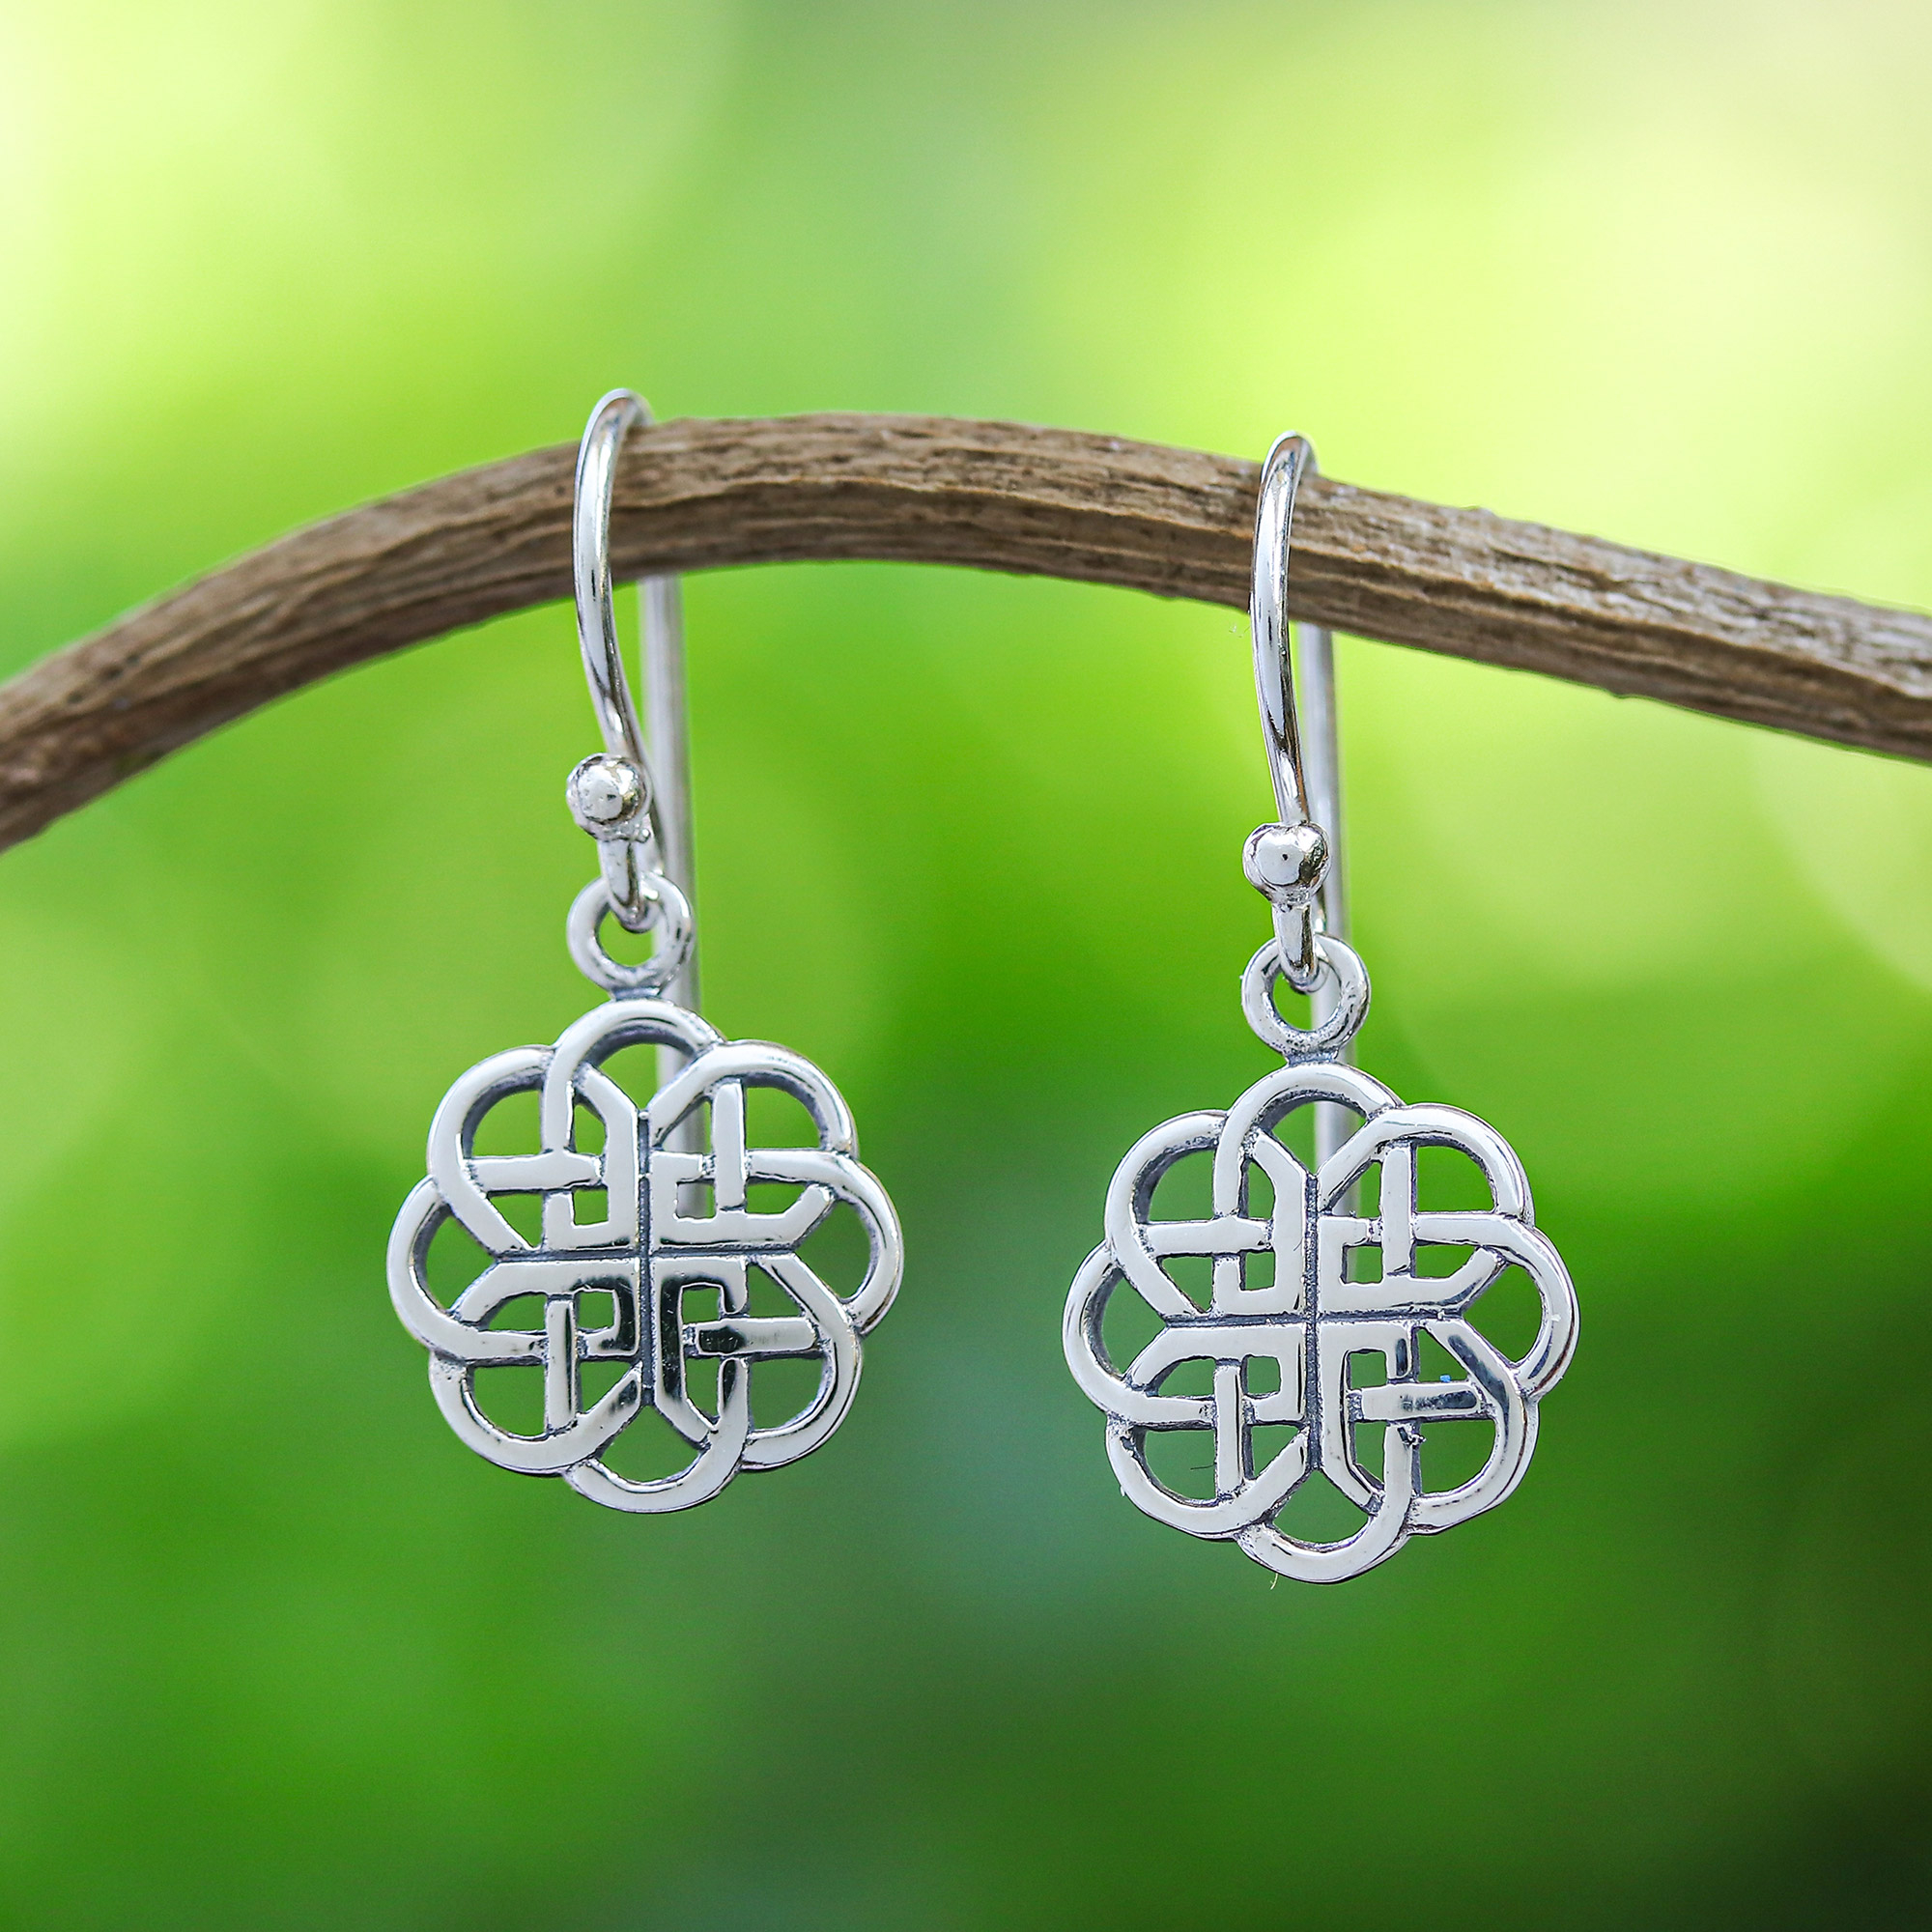 Celtic knot earrings sterling silver earrings love knot earrings Celtic earrings in silver dangle earrings petite silver earrings